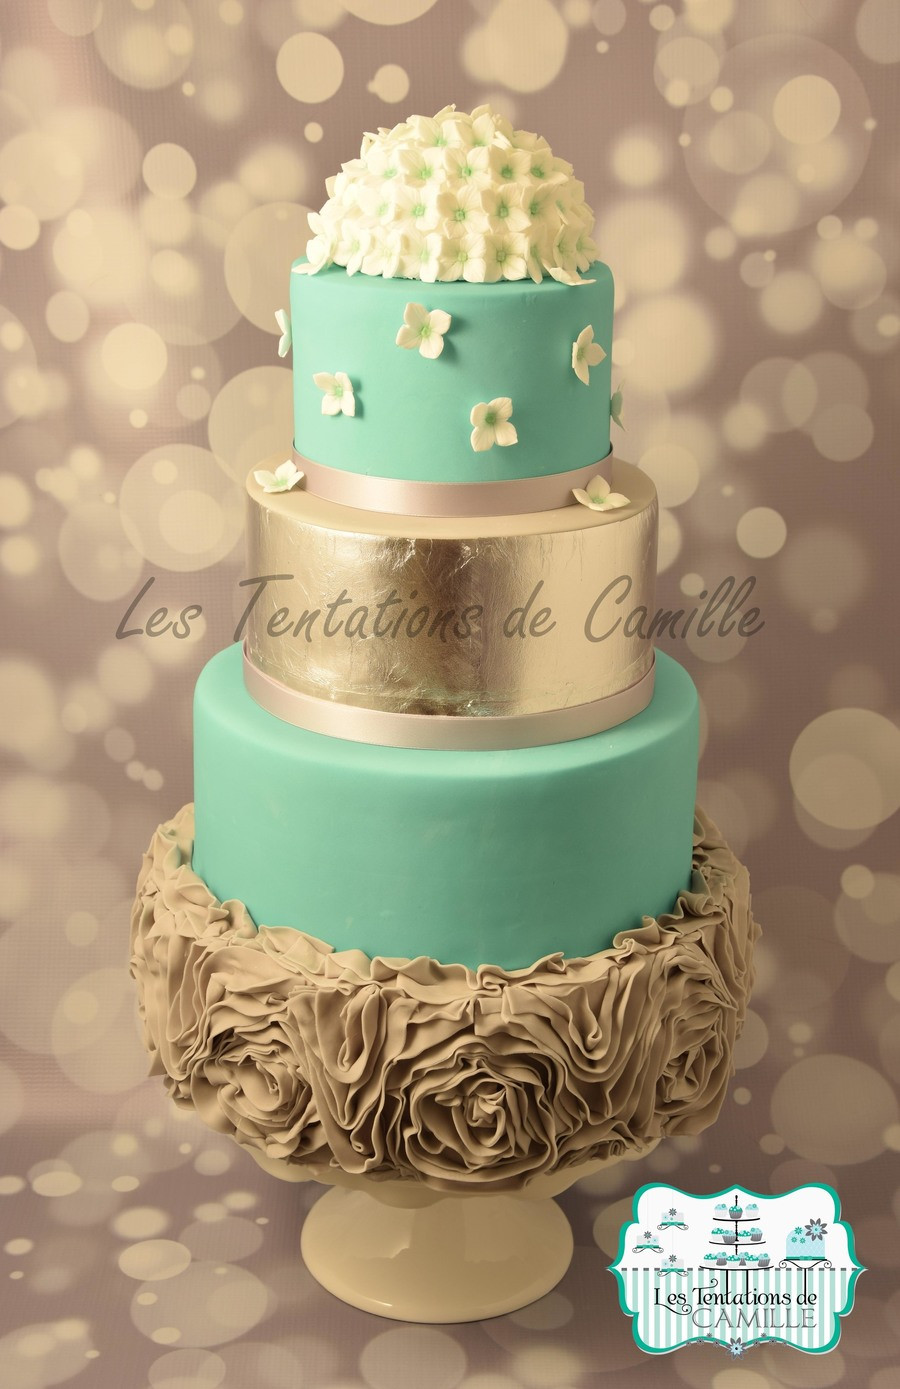 Turquoise Wedding Cake
 Turquoise & Gray Wedding Cake CakeCentral